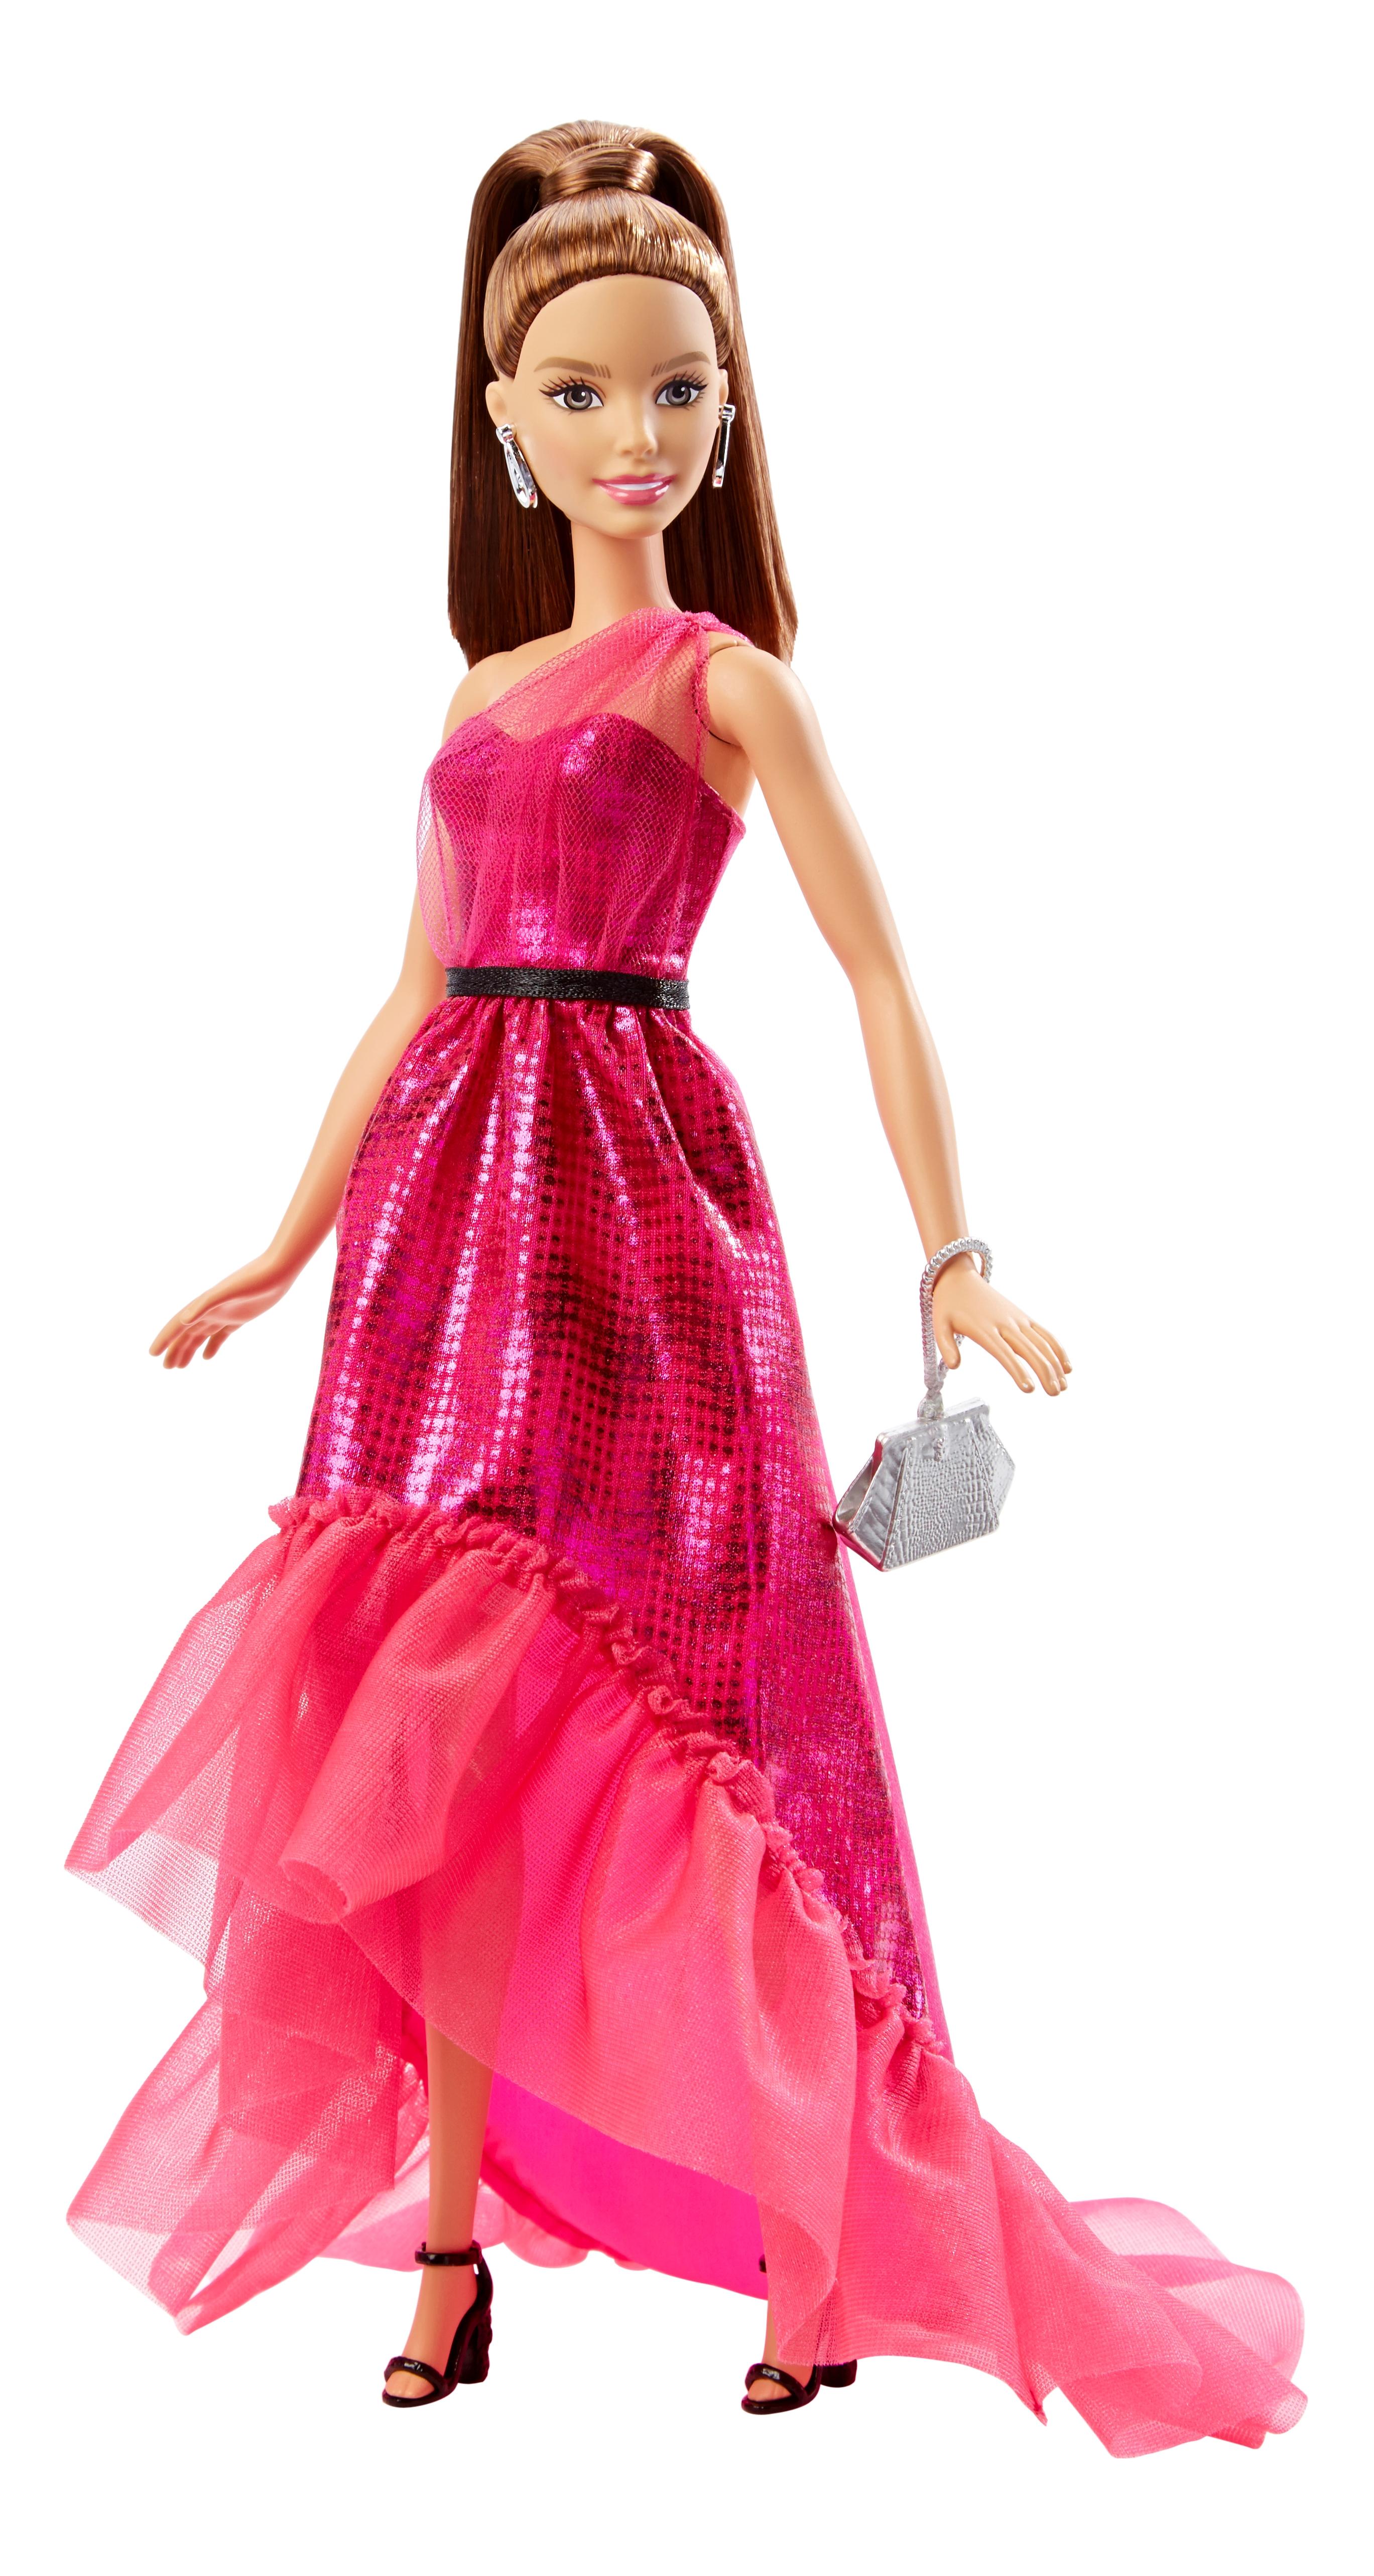 Кукла Barbie в вечернем платье-трансформере DGY69 DGY71 кукла barbie принцесса брюнетка в ярком платье gjk15